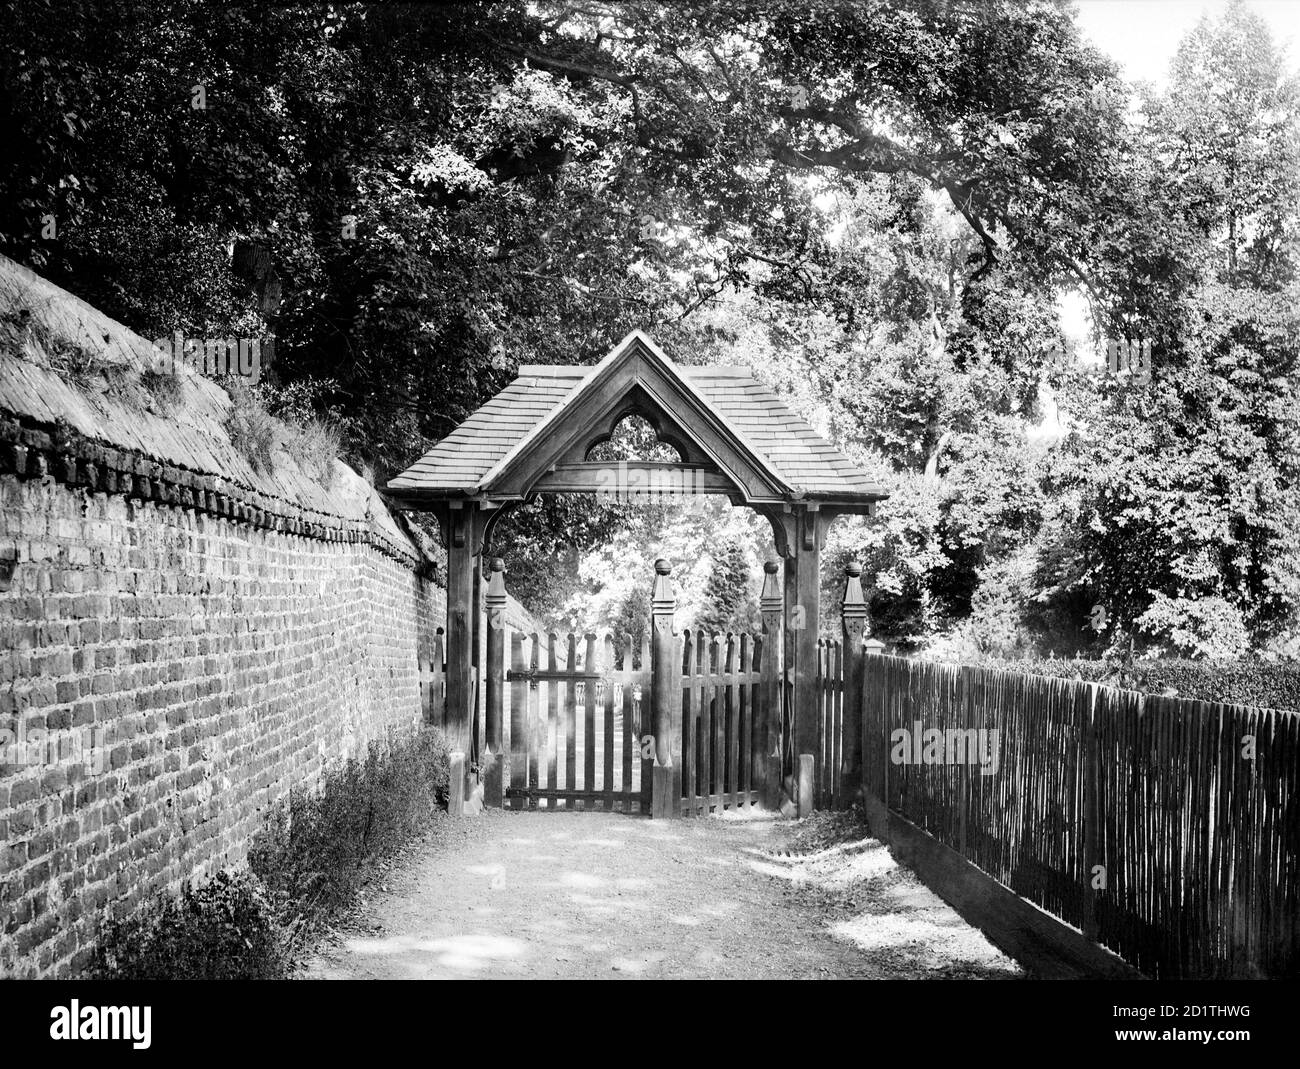 ST ANDREWS CHURCH, Sonning, Berkshire. La puerta de madera de lich de la iglesia, construida en la época victoriana, con un estrecho carril detrás. Fotografiado por Henry Taunt (activo 1860 - 1922). Foto de stock